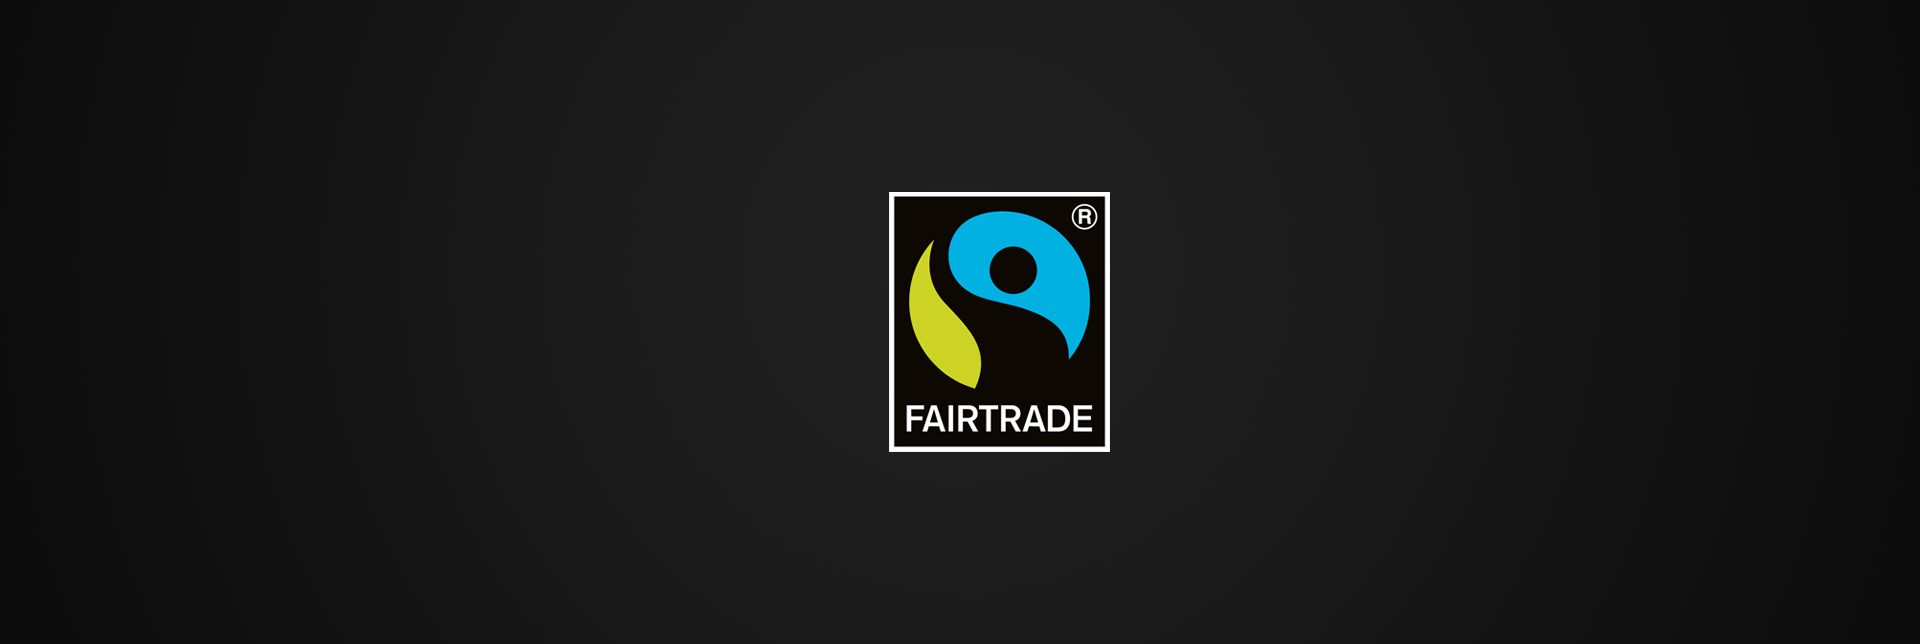 header-banner-fairtradeworks.jpg